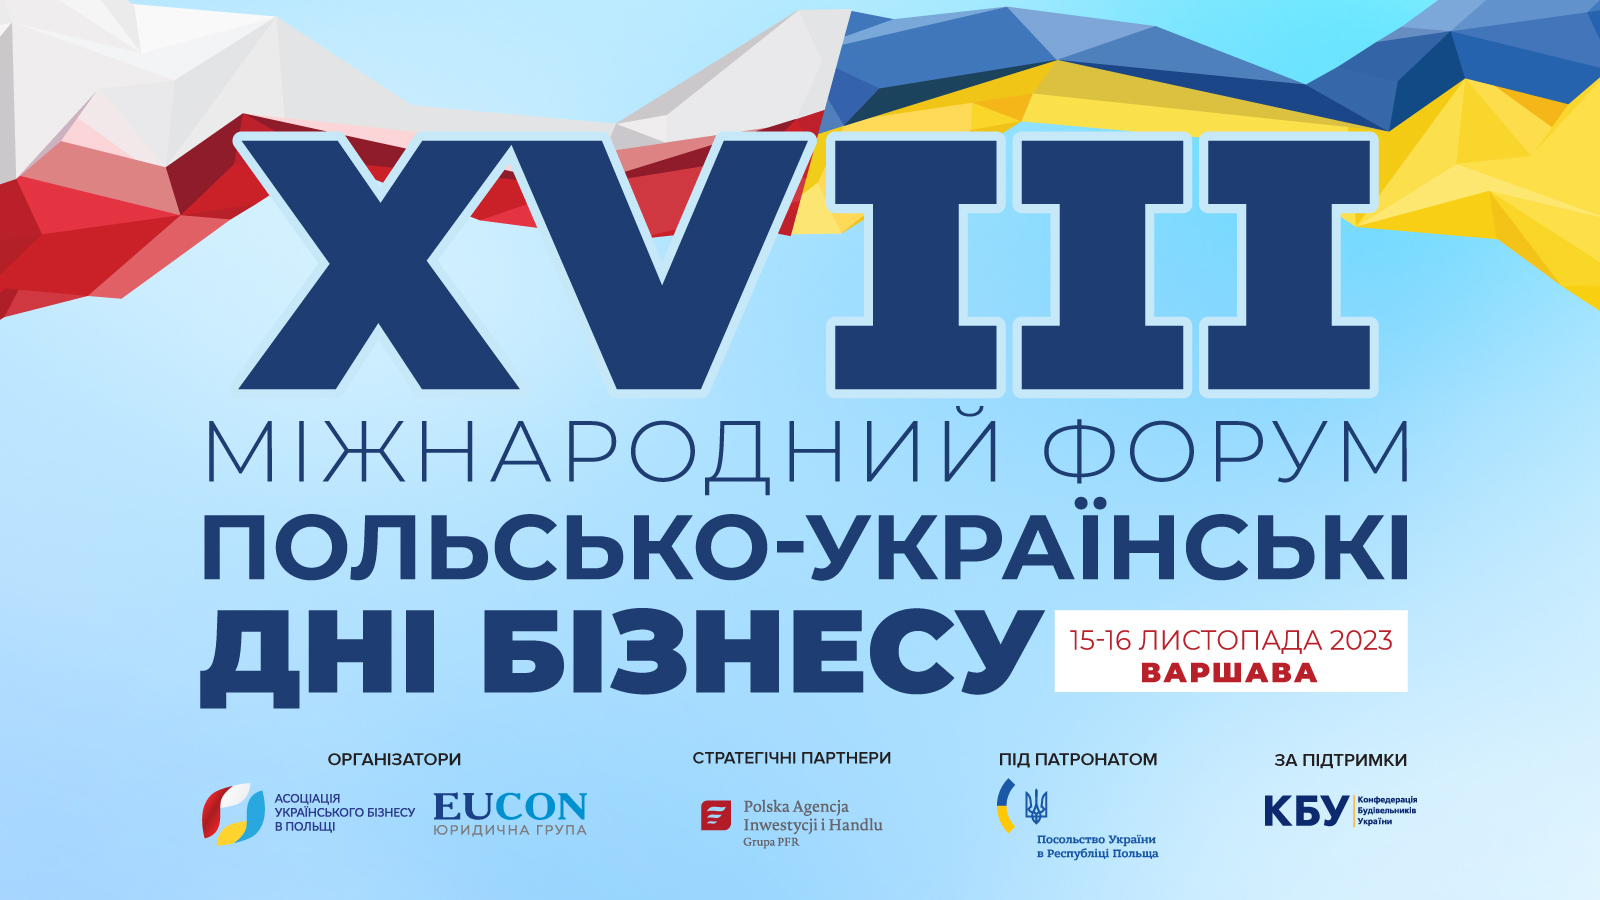 XVIIІ Международный форум «Польско-украинские дни бизнеса»: регистрация открыта!